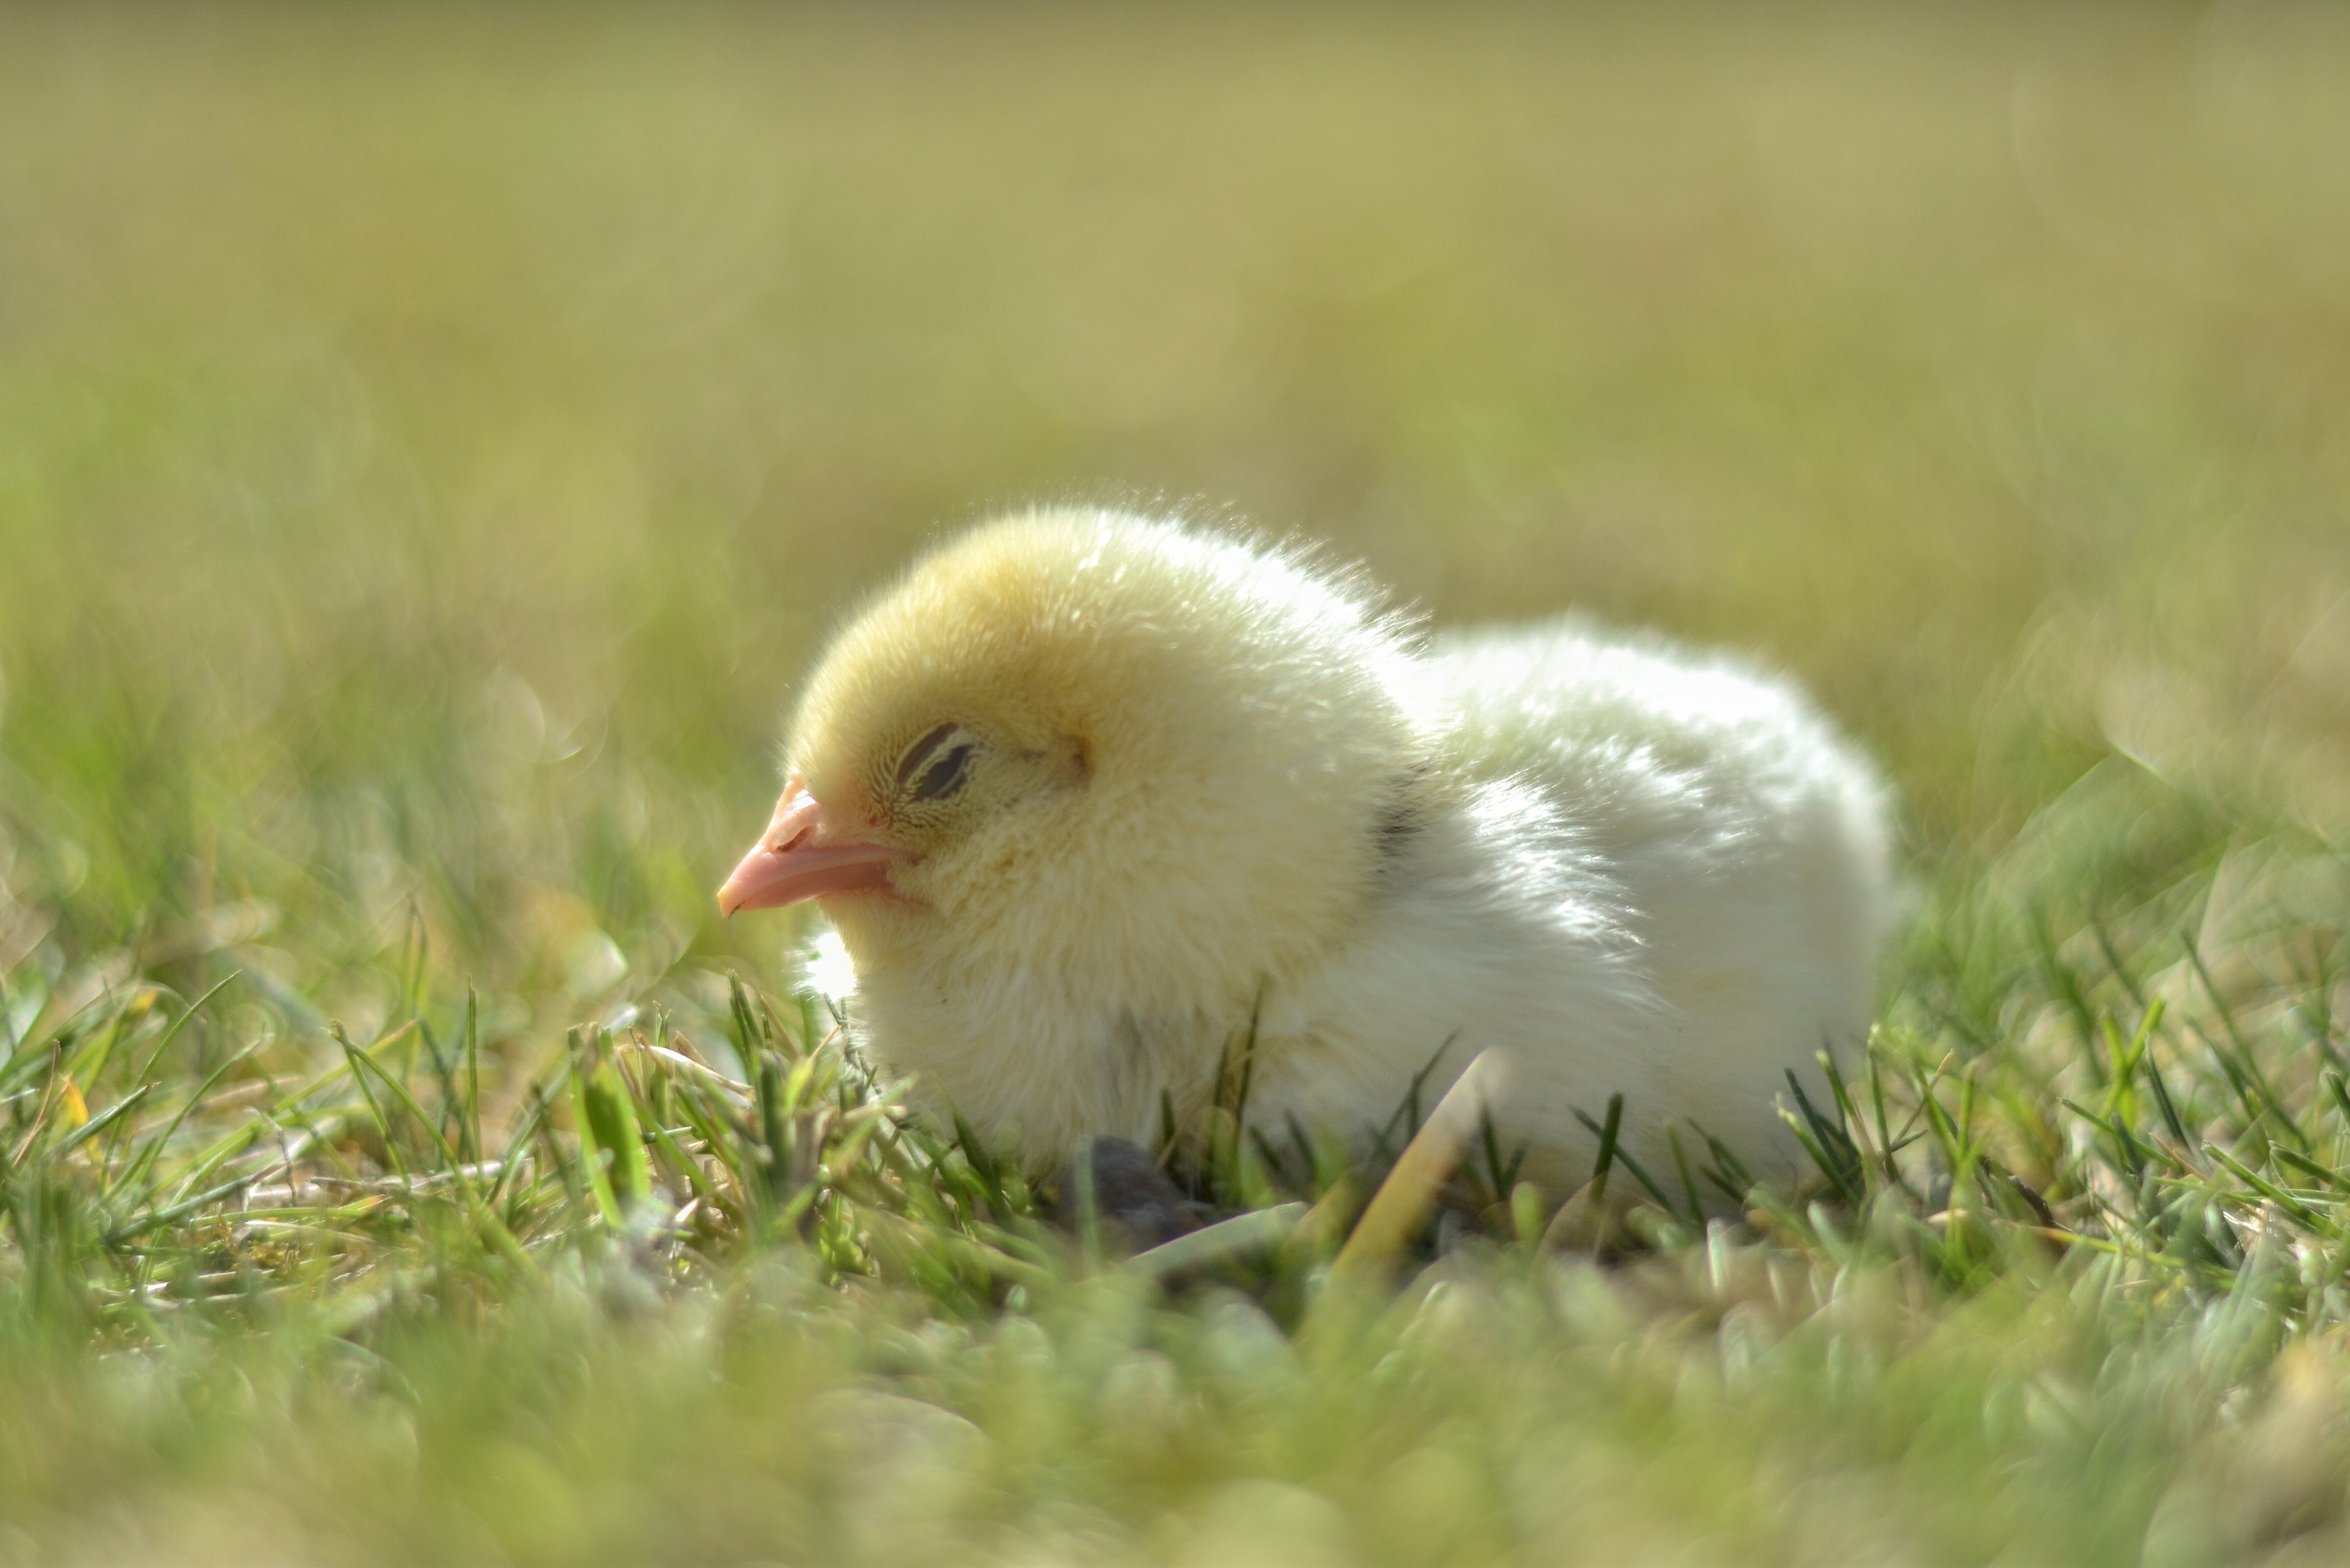 Un pollo durmiendo apaciblemente sobre la hierba.